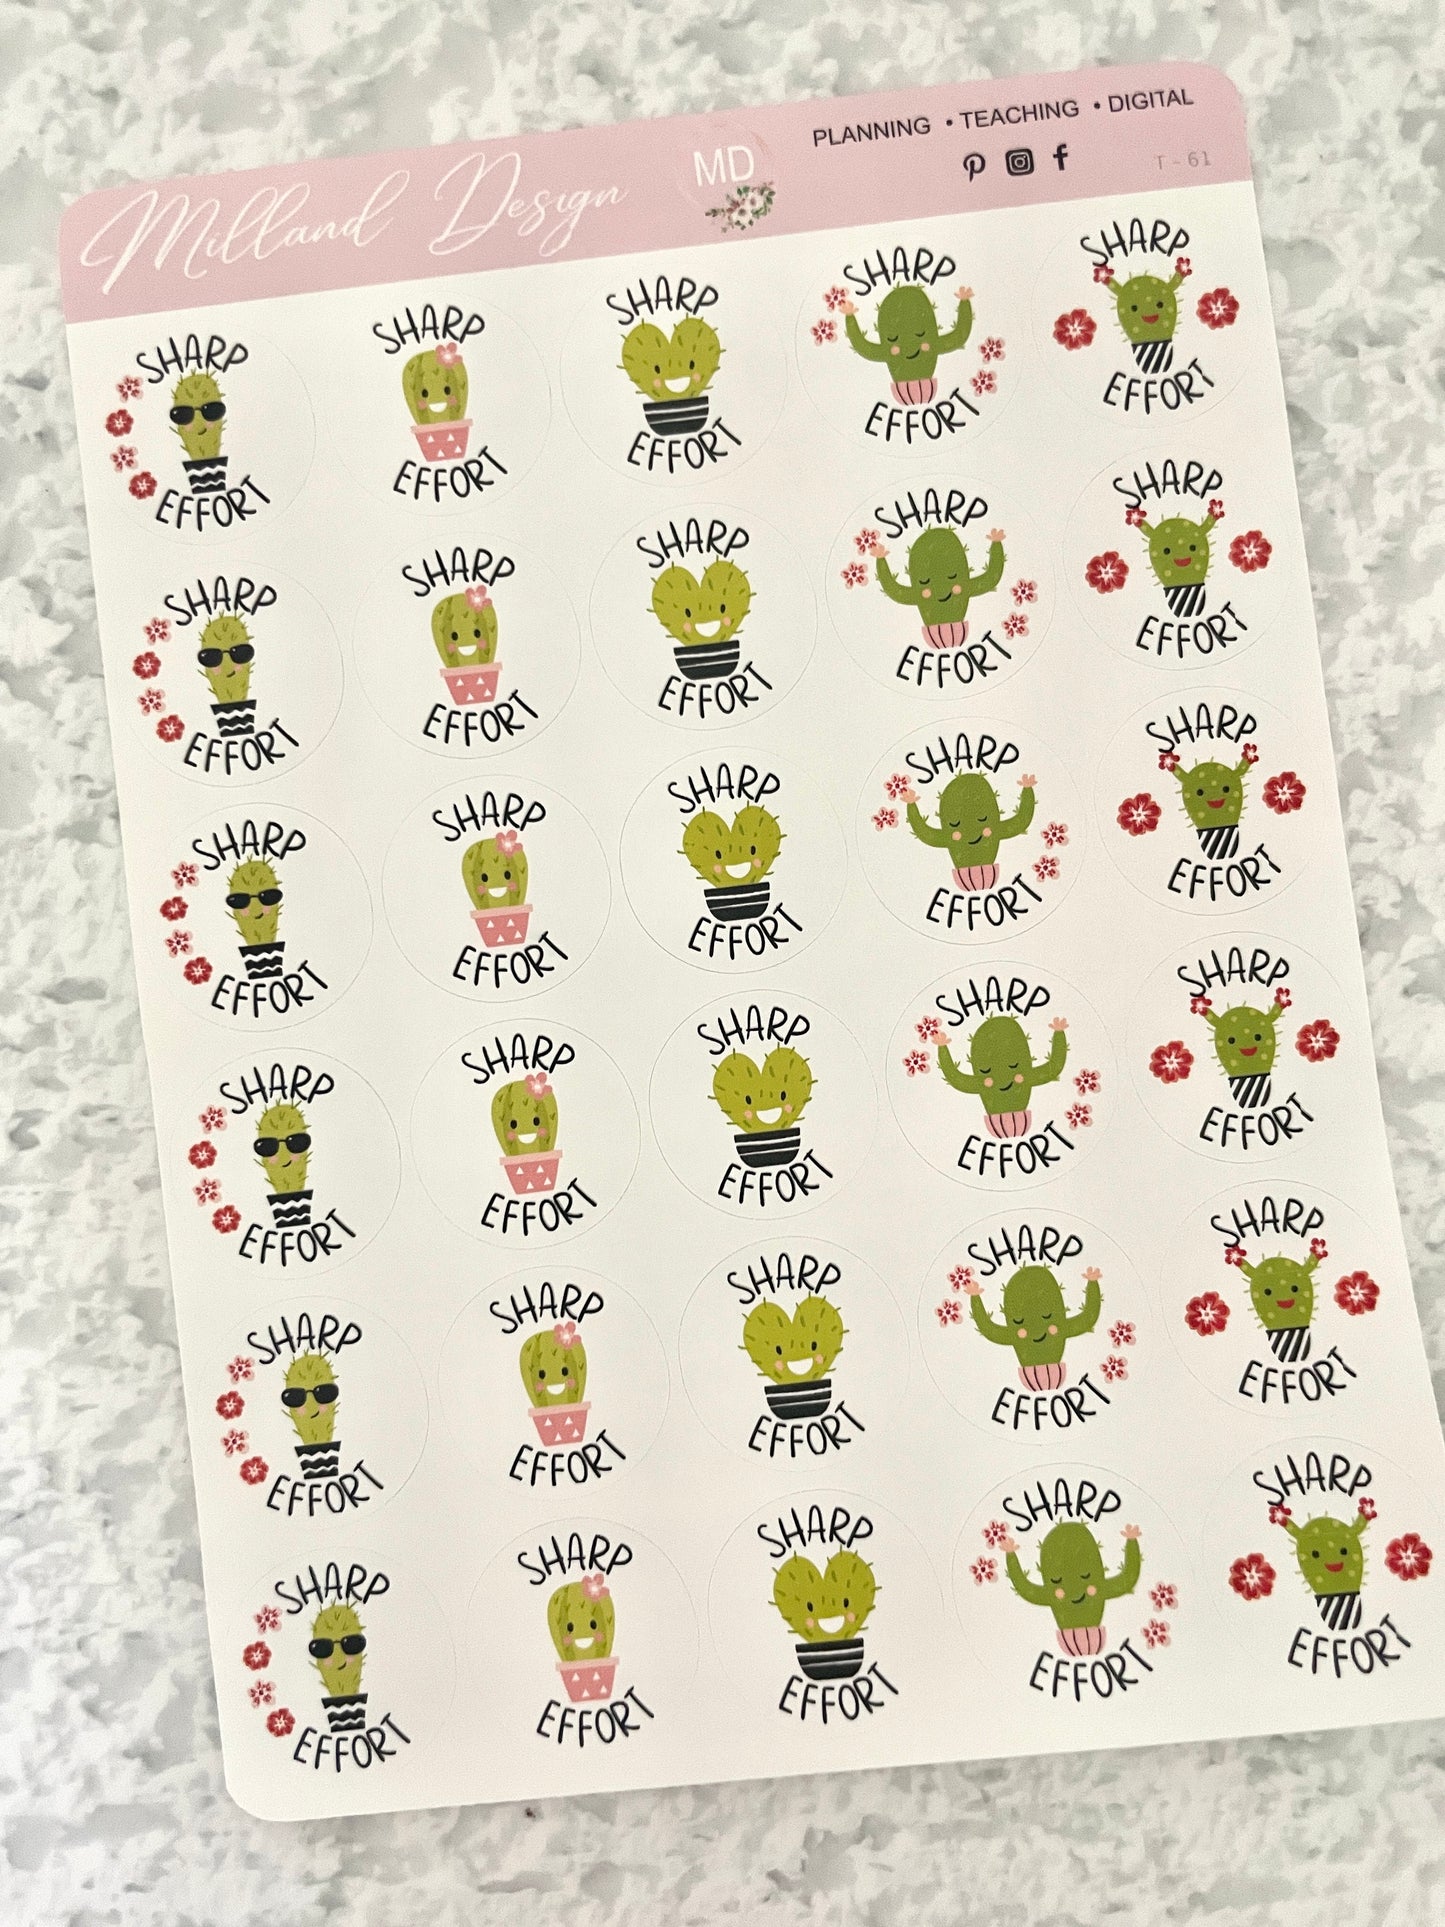 Cactus General Merit Stickers